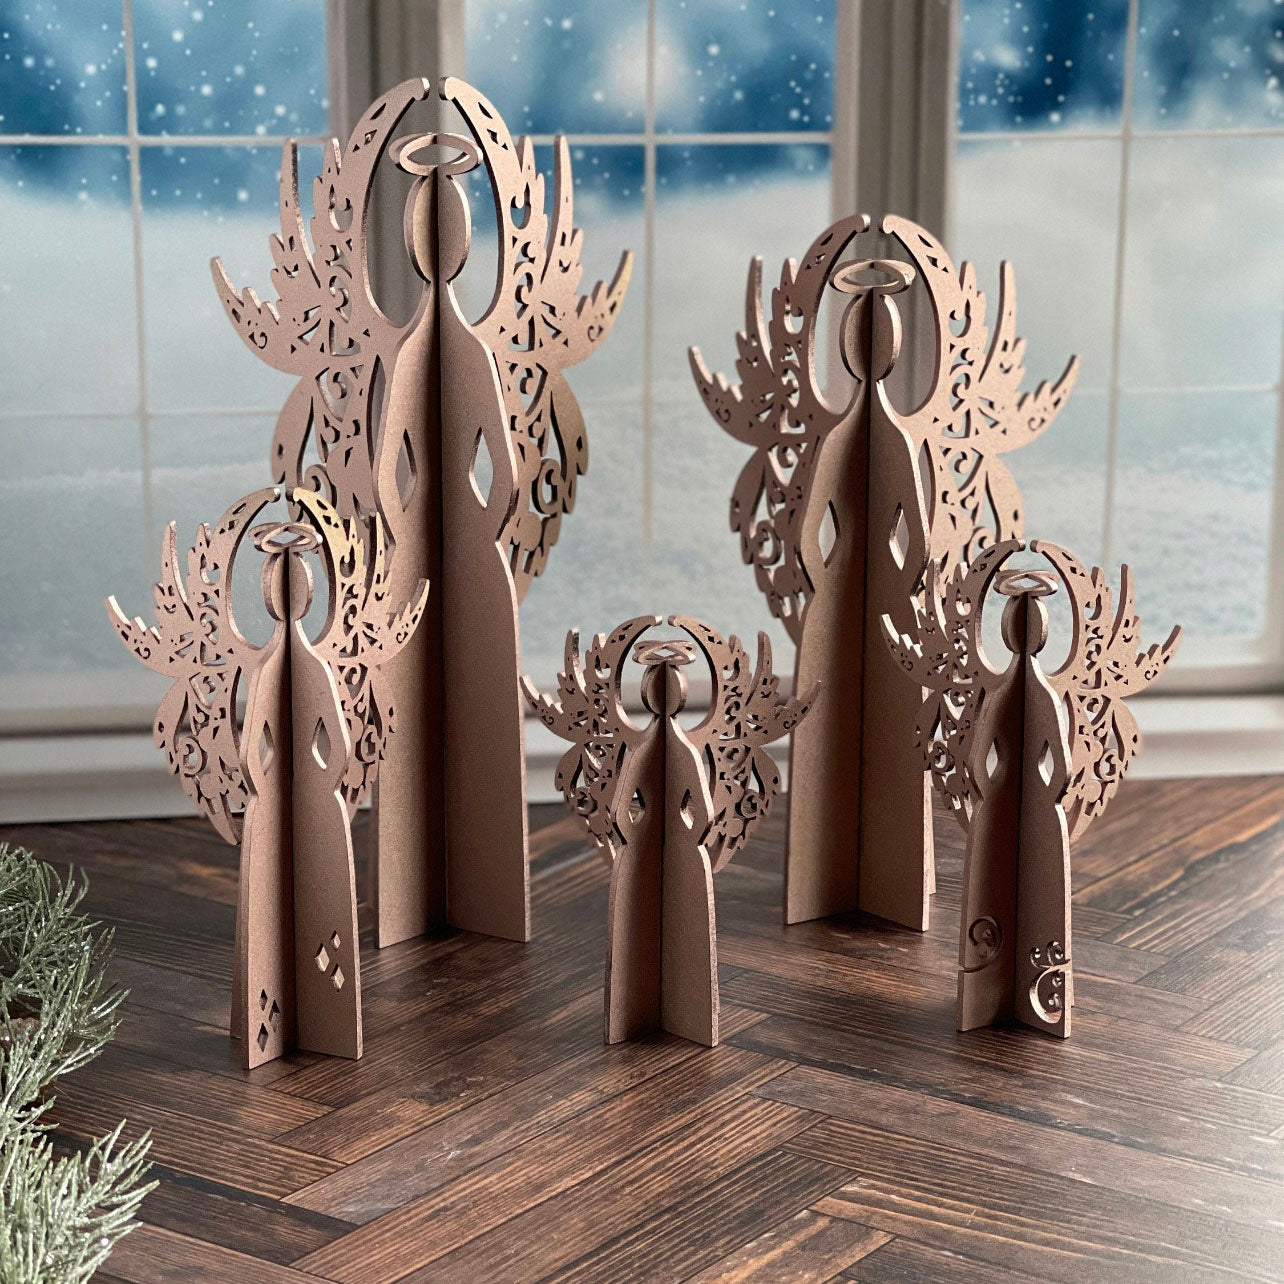 3D Angels Shelf Sitters (Set of 5)